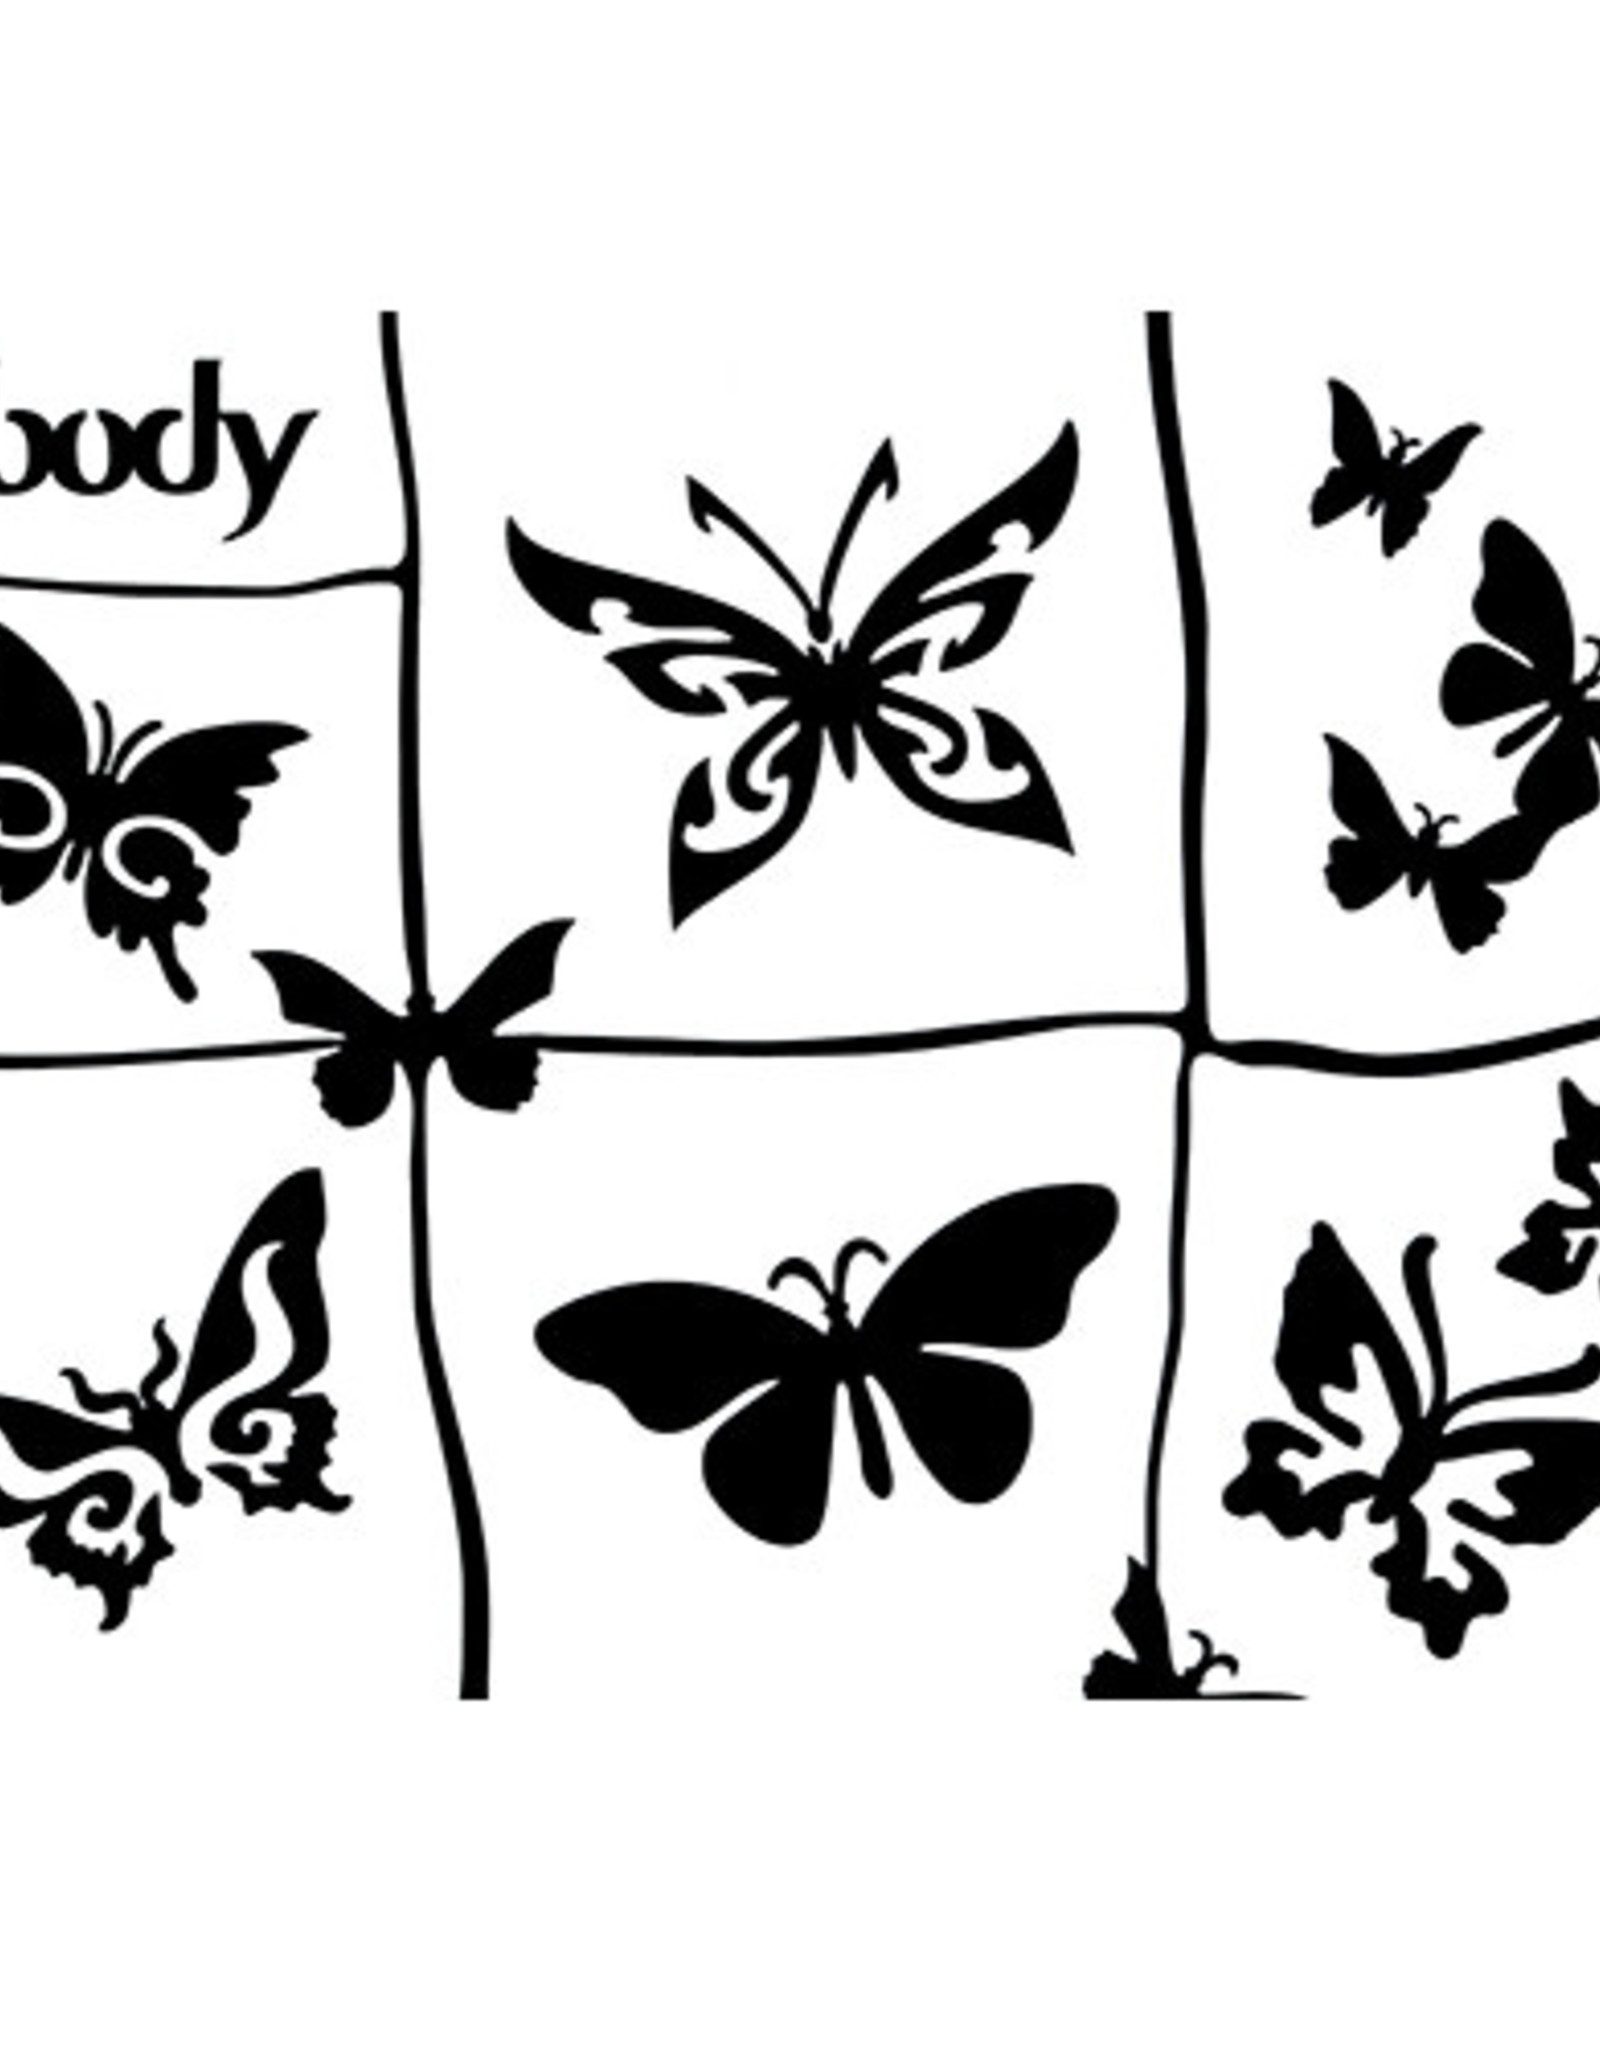 Ybody Ybody - A5 Theme Stencil Butterflies GSB59-0000